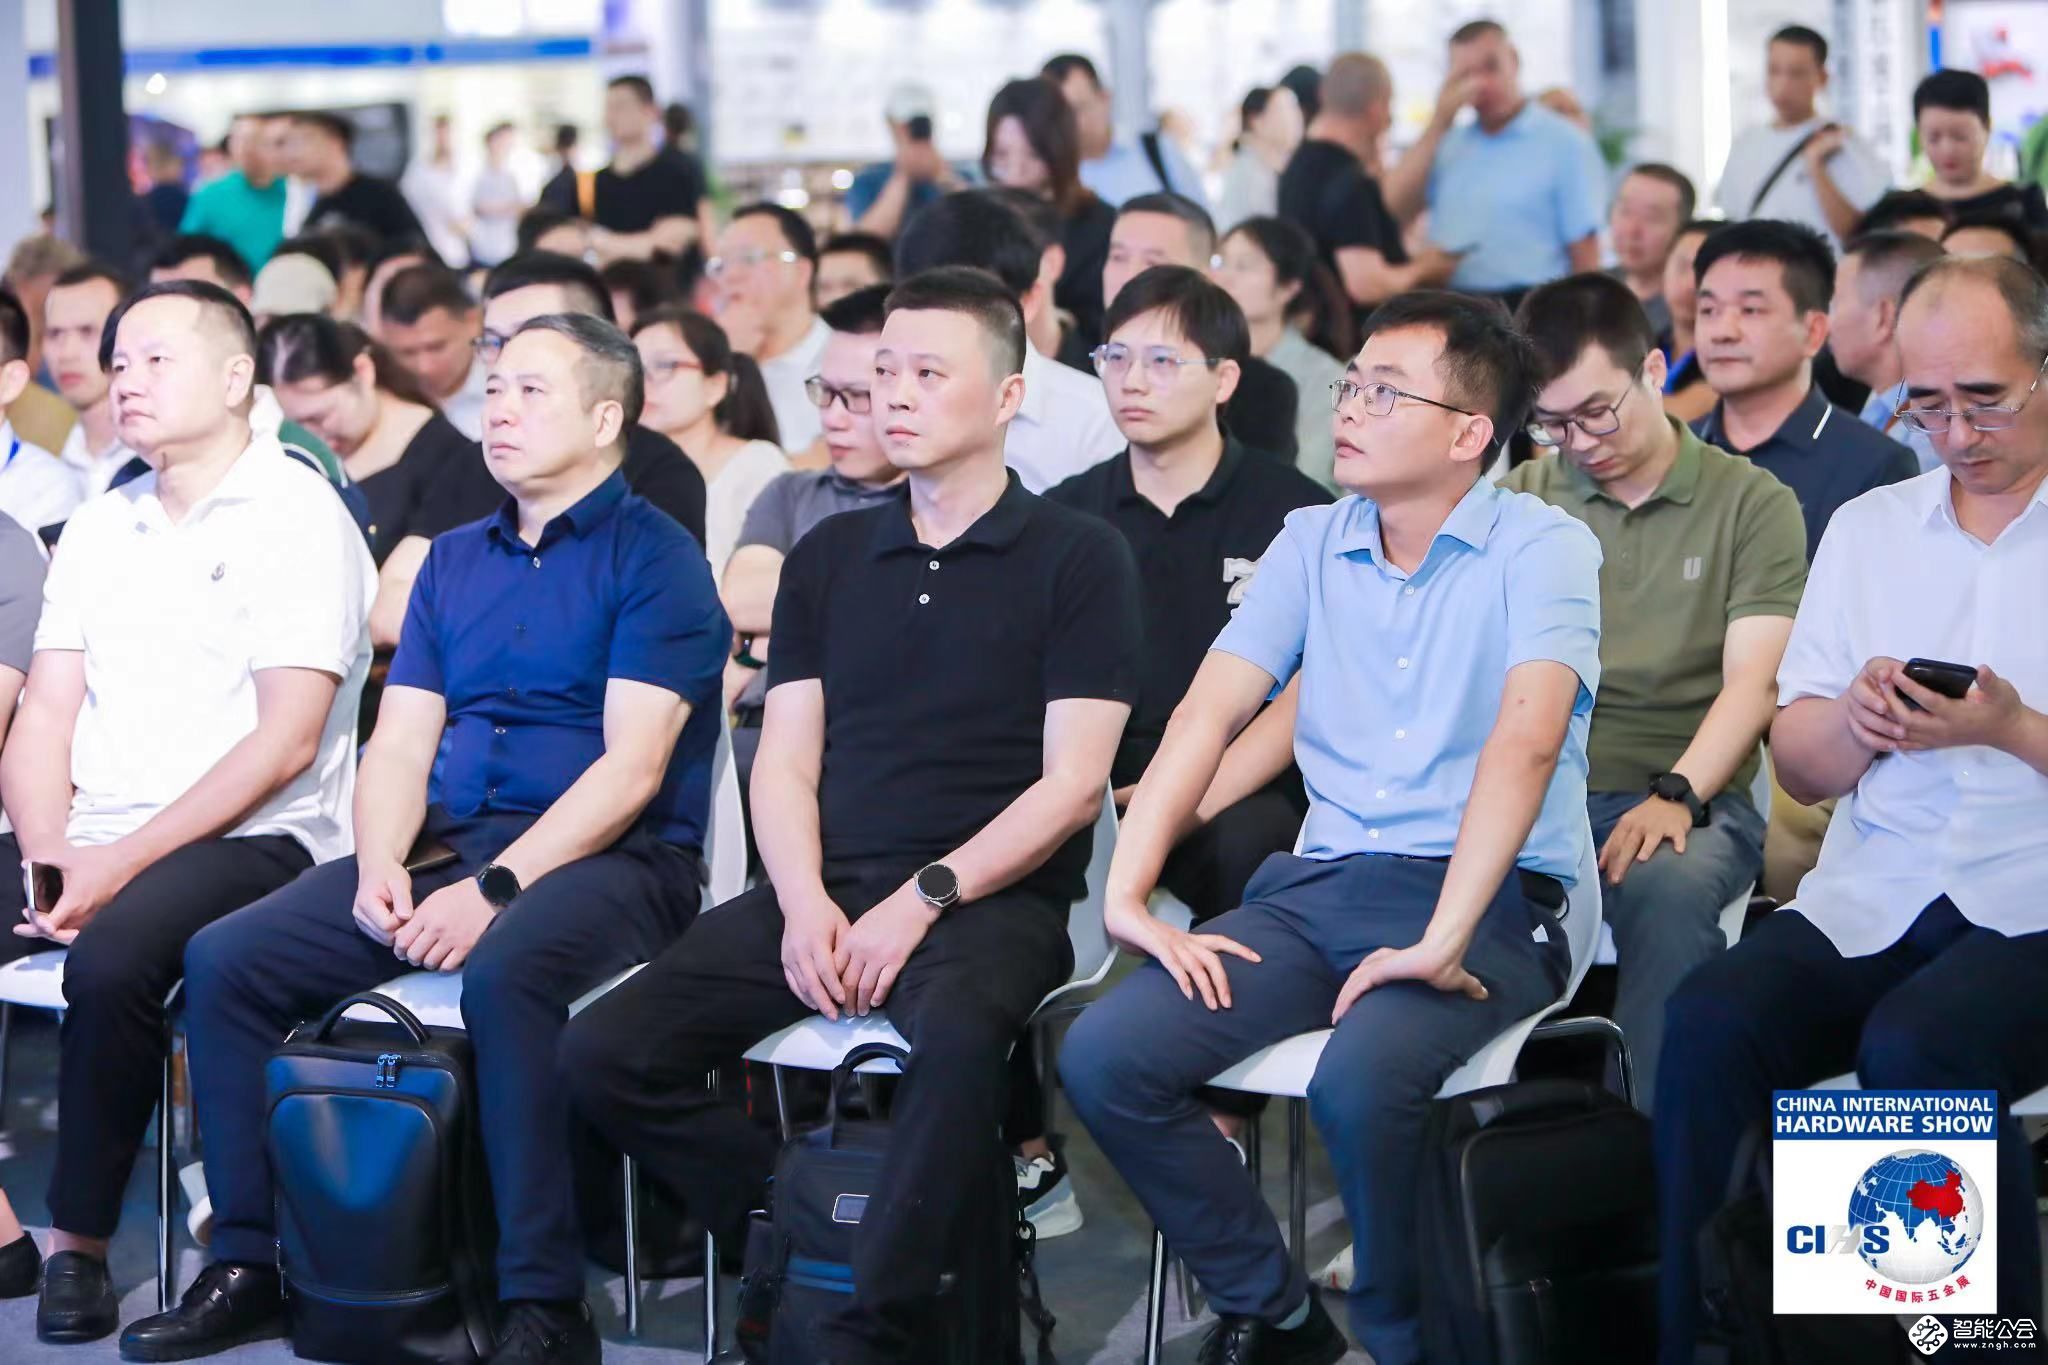 第七次中国五金制品协会团体标准发布会上海召开 智能公会